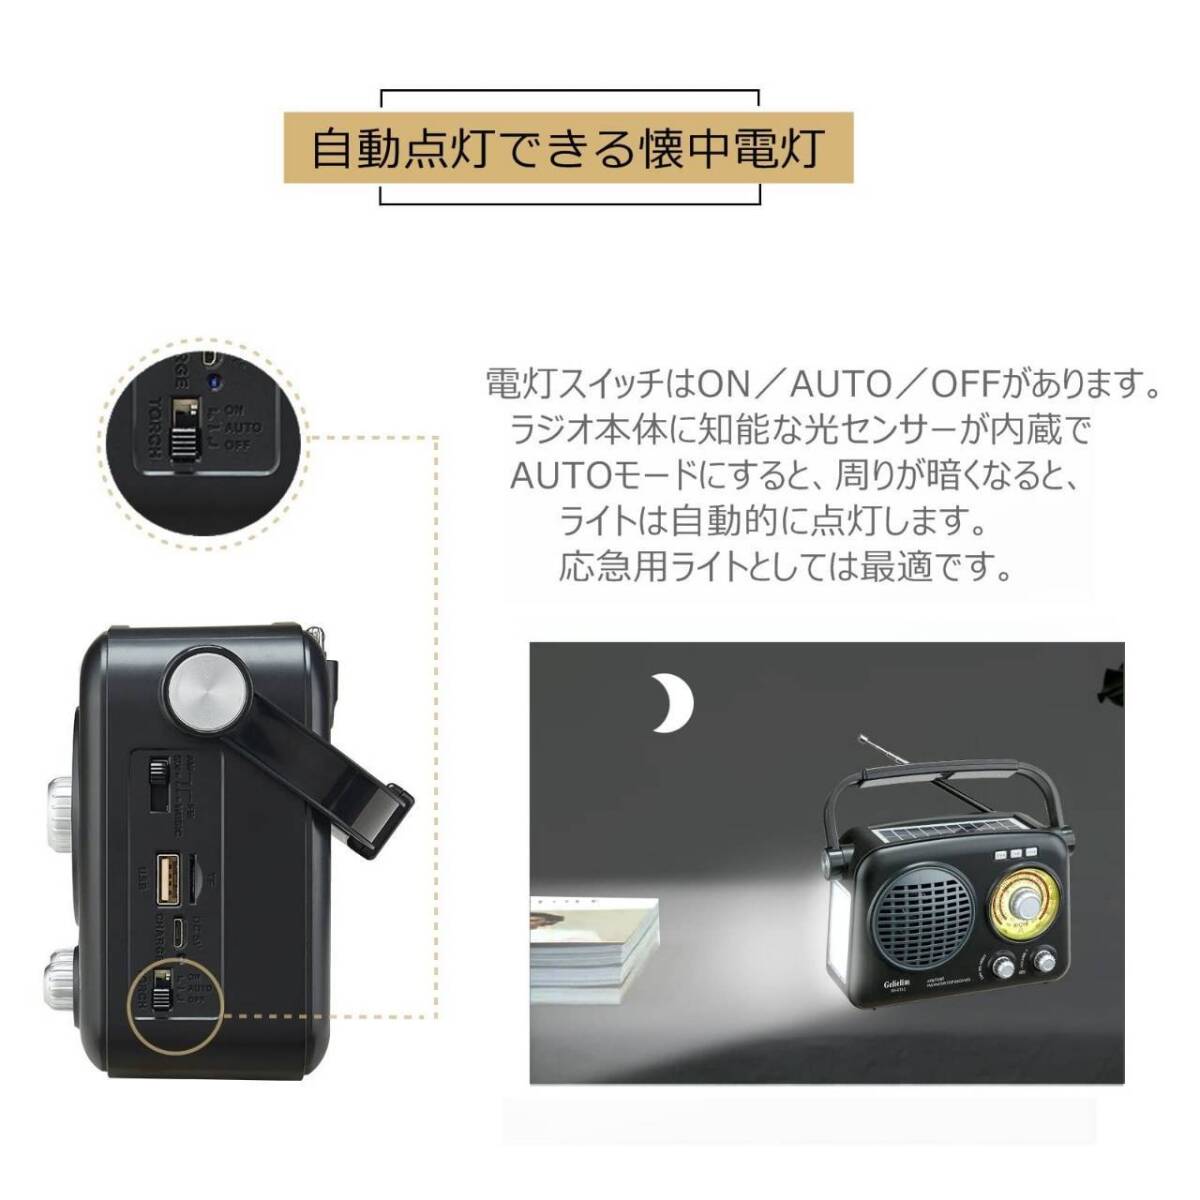 充電式ポータブルラジオと懐中電灯の便利な2-in-1デバイス